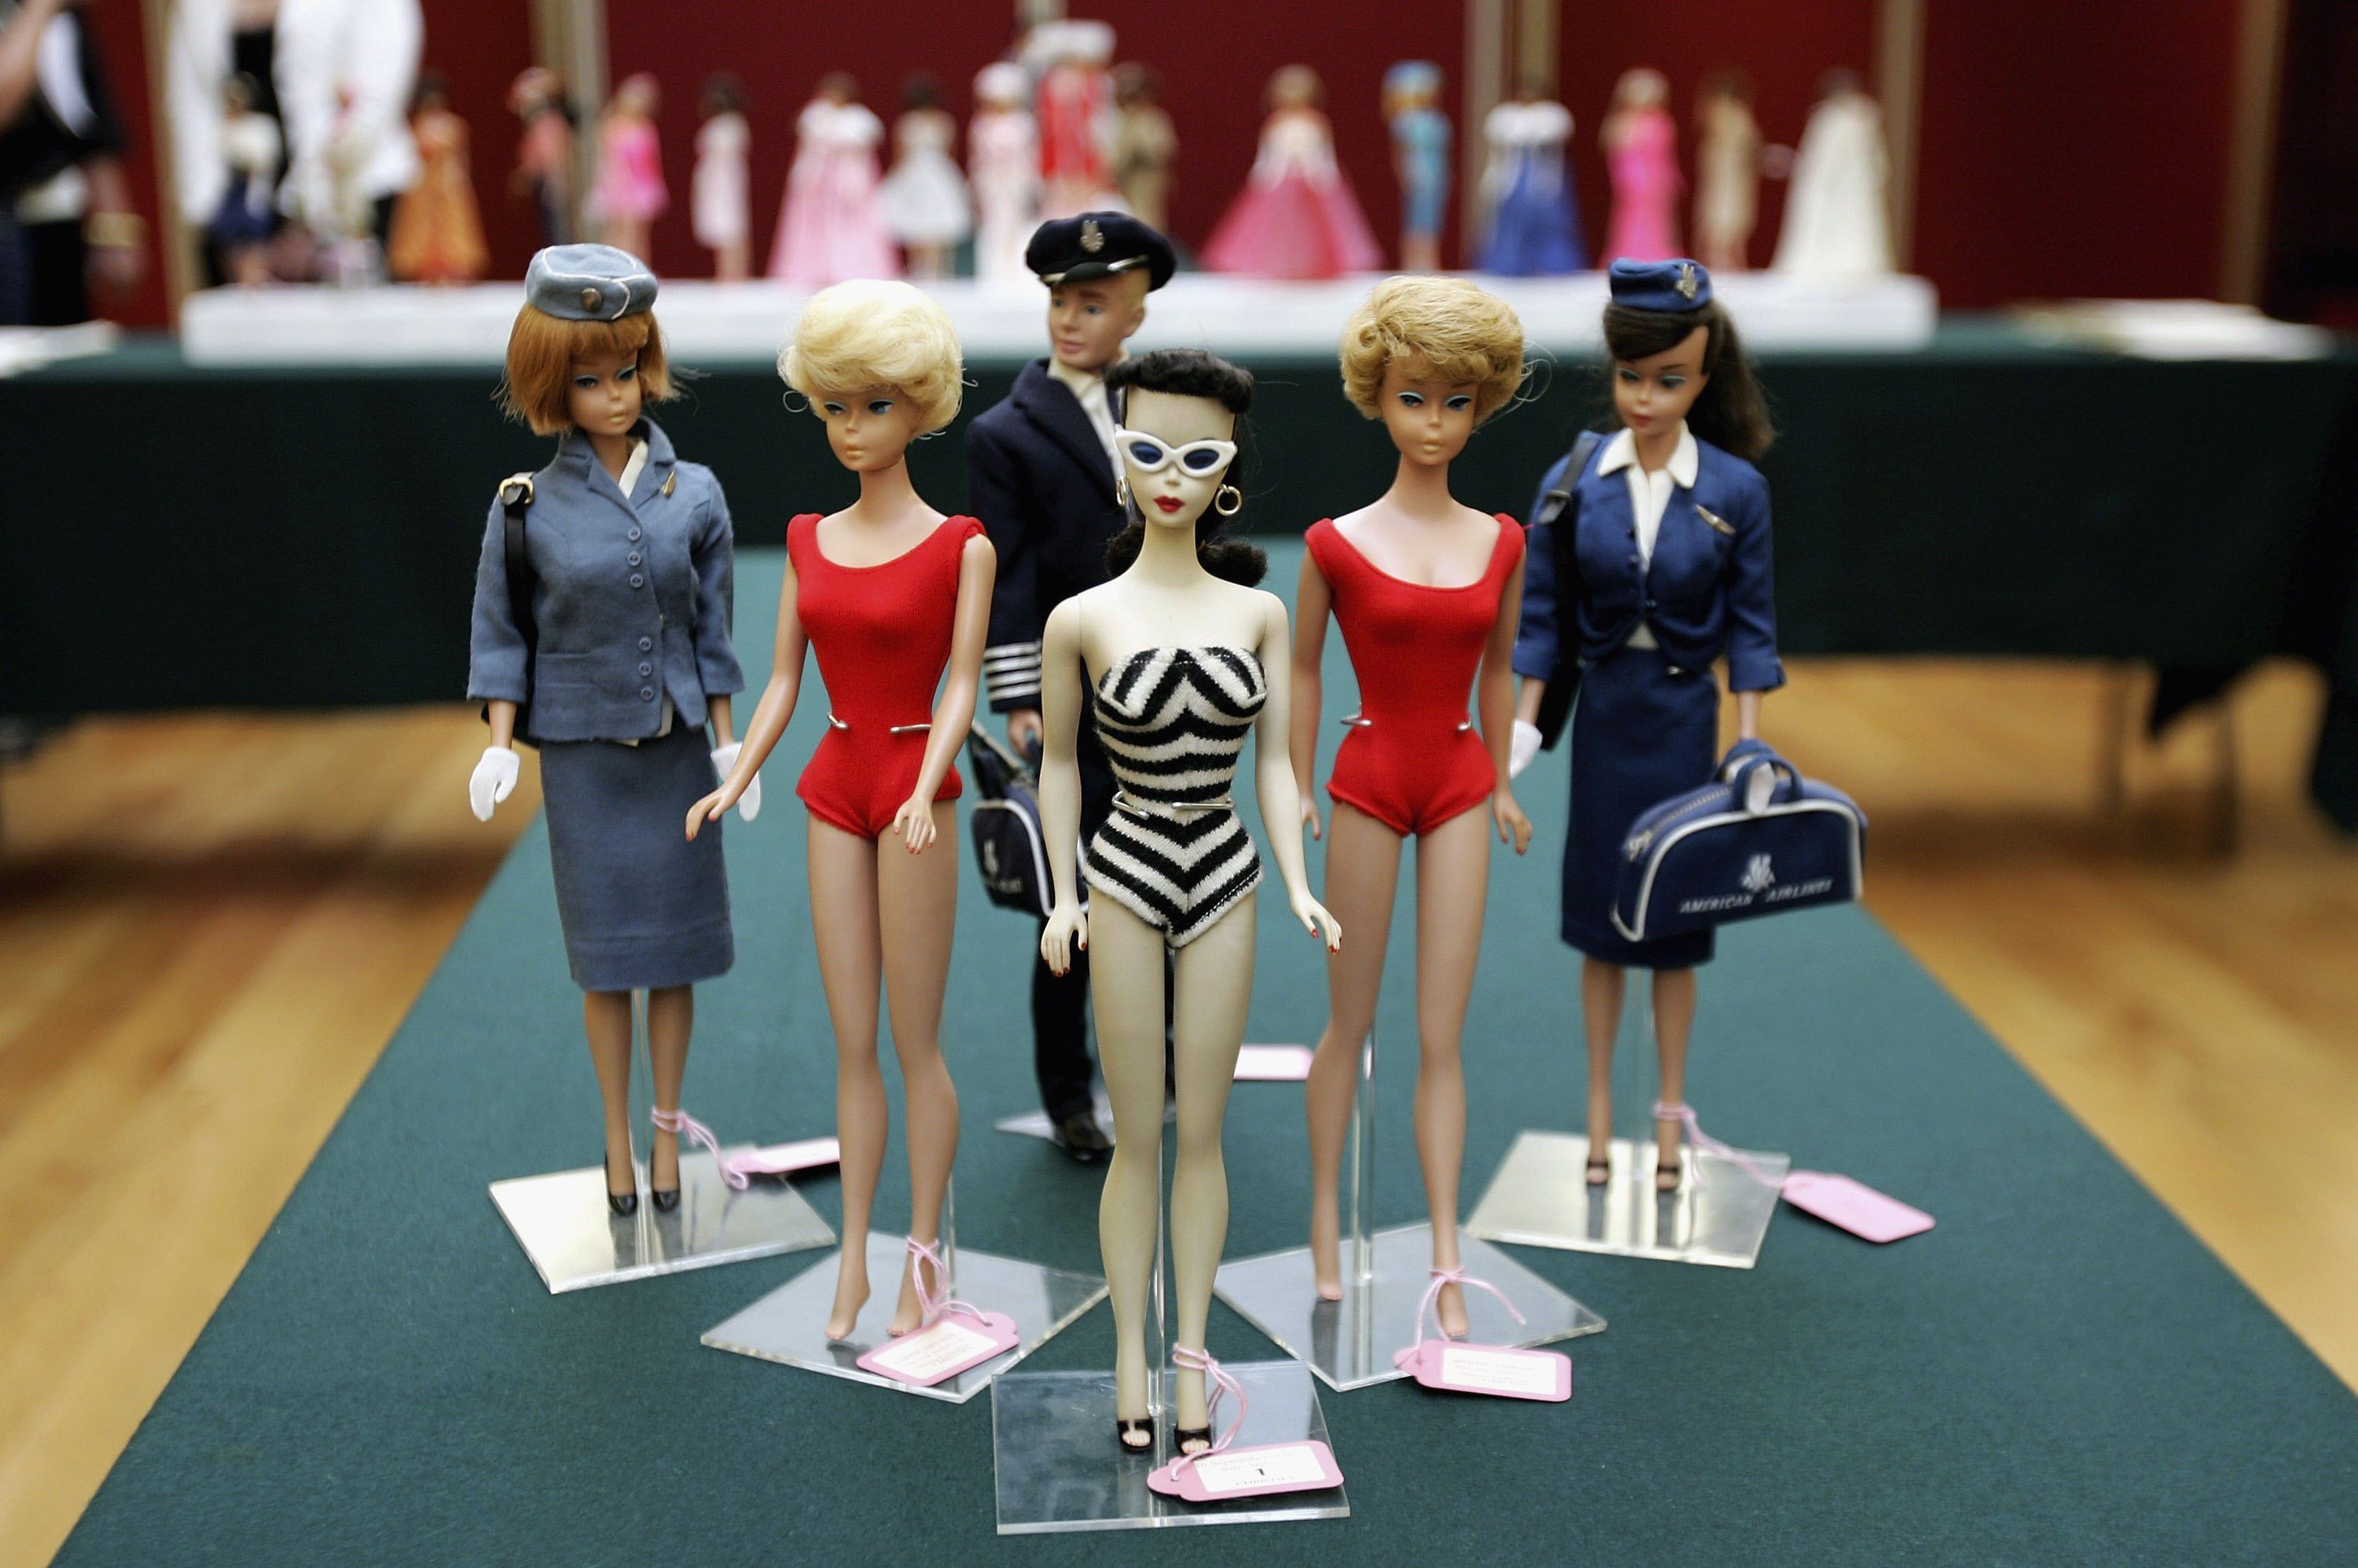 Original Barbie Doll's Outfit Dresses Accessories Shoes Sets